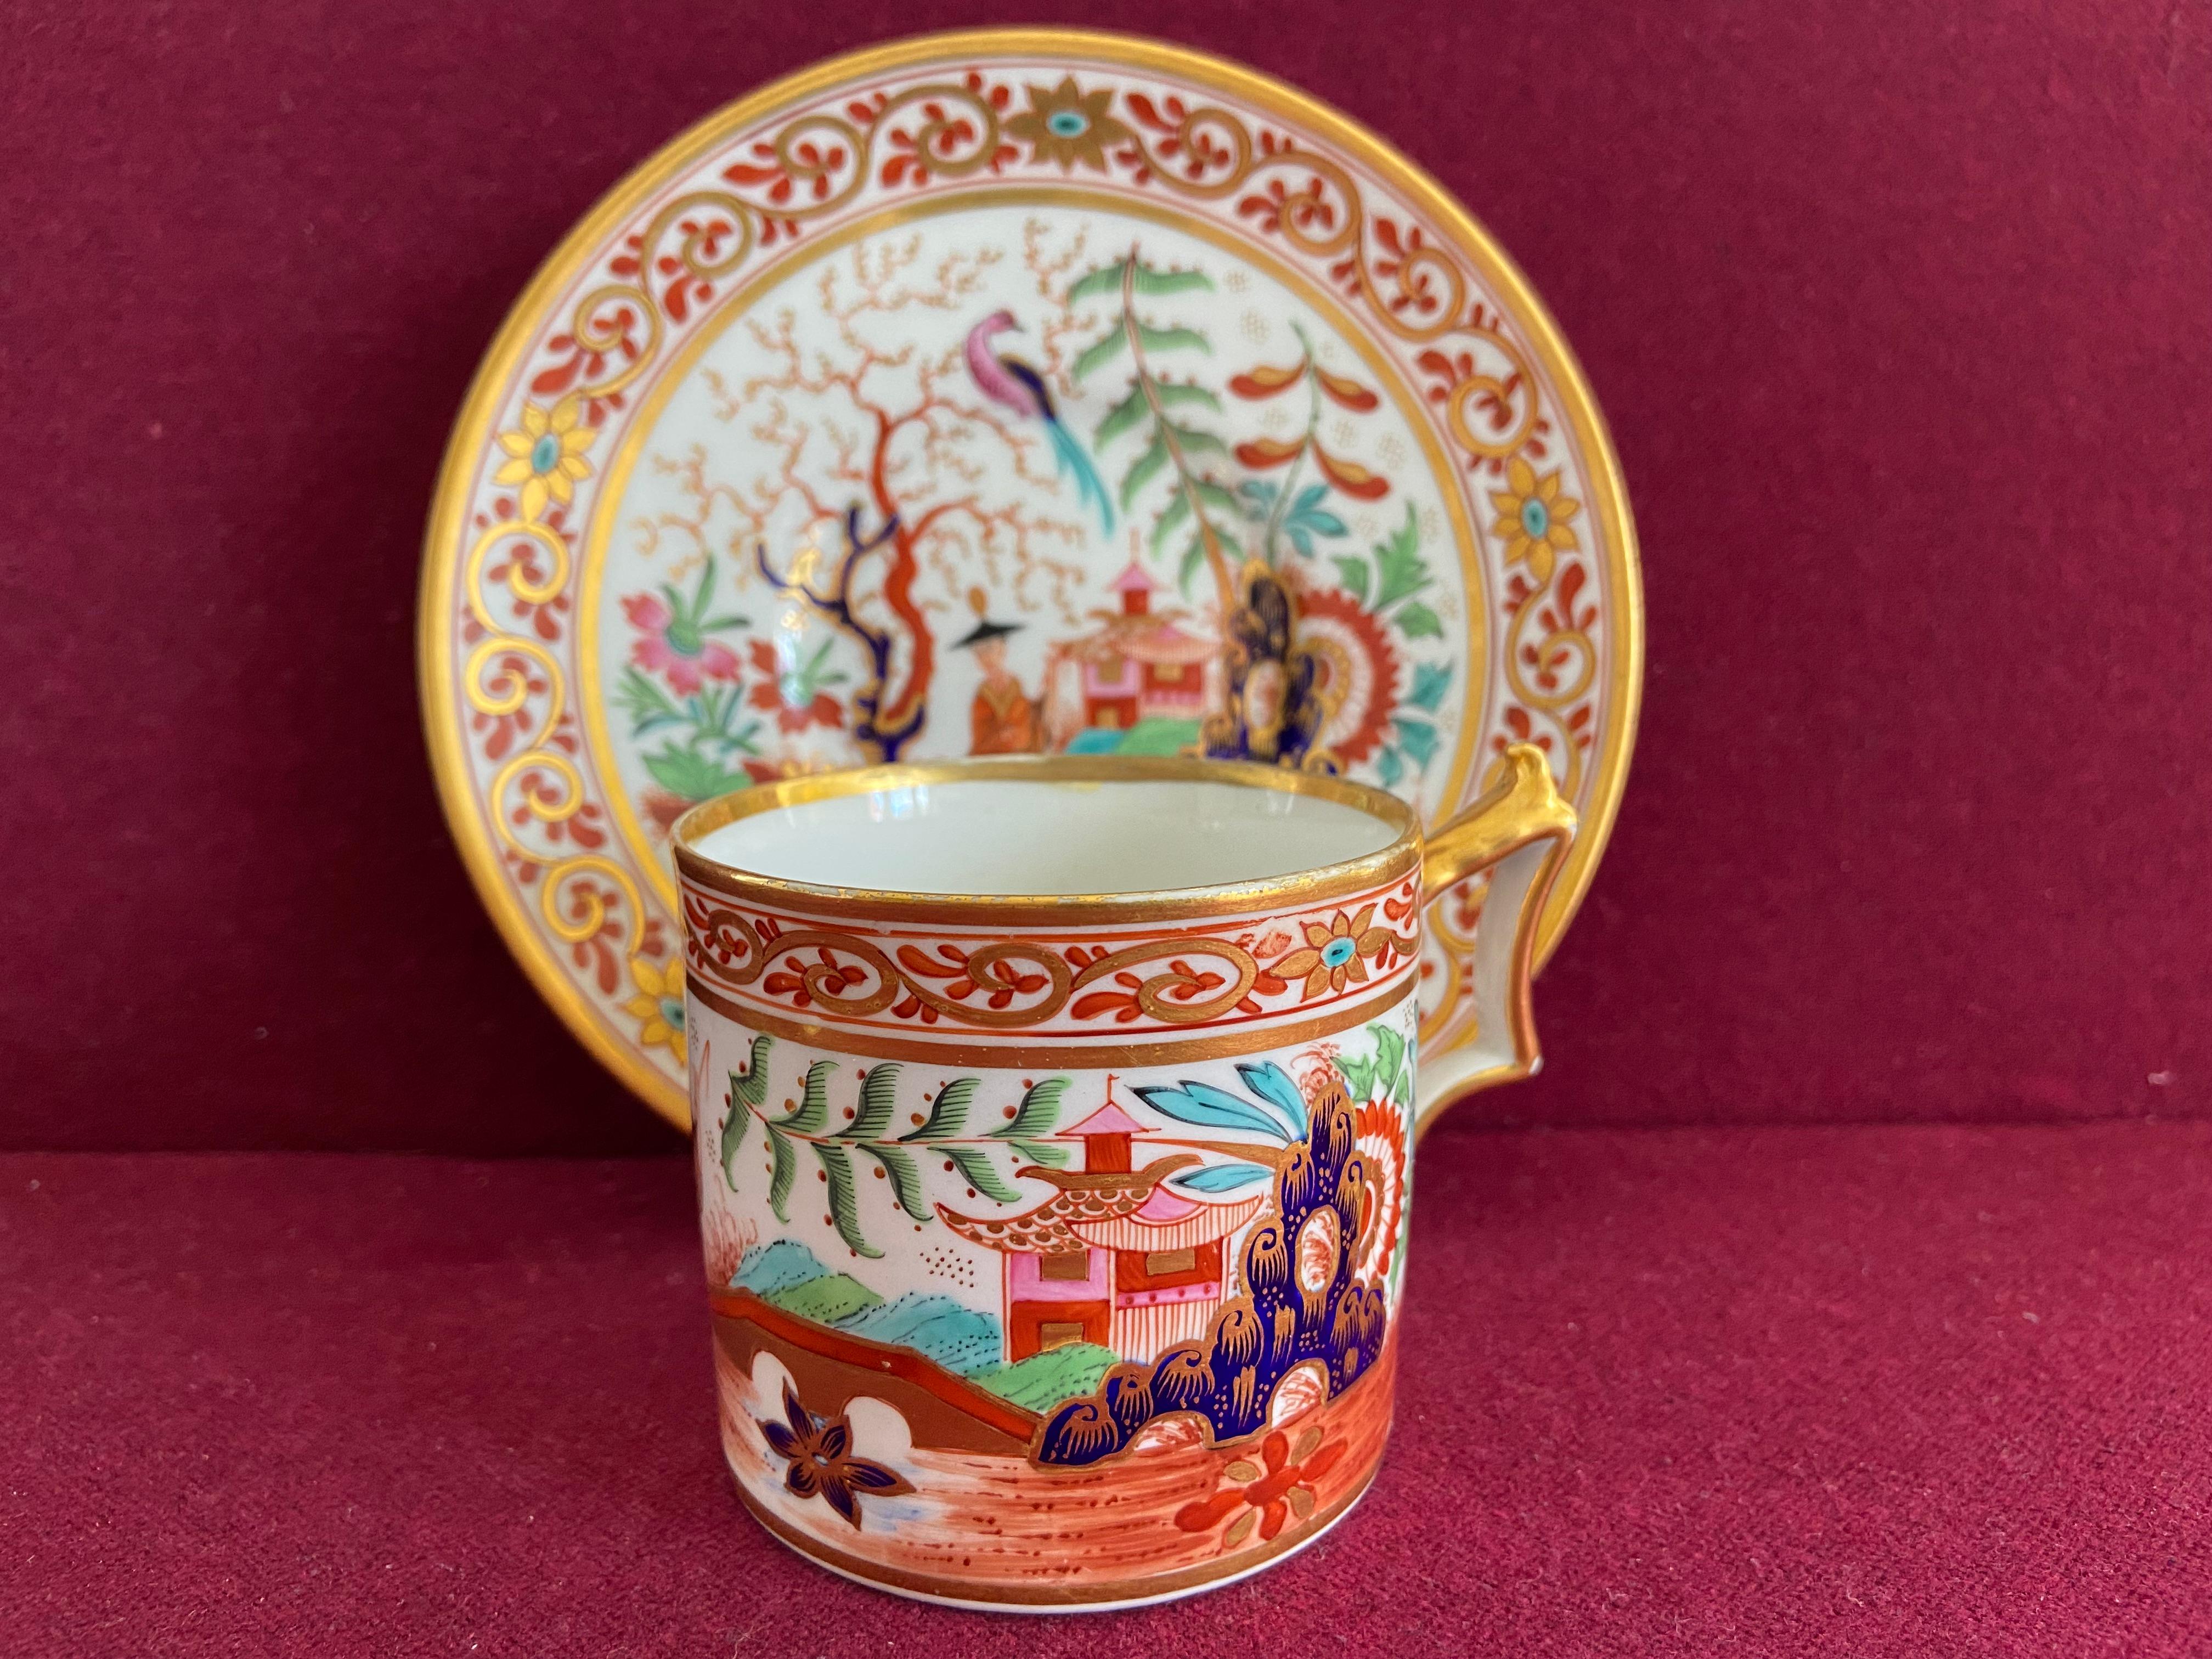 Ein Flight Barr und Barr Worcester Porzellan Kaffee Can und Untertasse c.1815-1820. Fein verziert mit einem kühnen Japan-Muster.

Zustand: Ausgezeichnet.